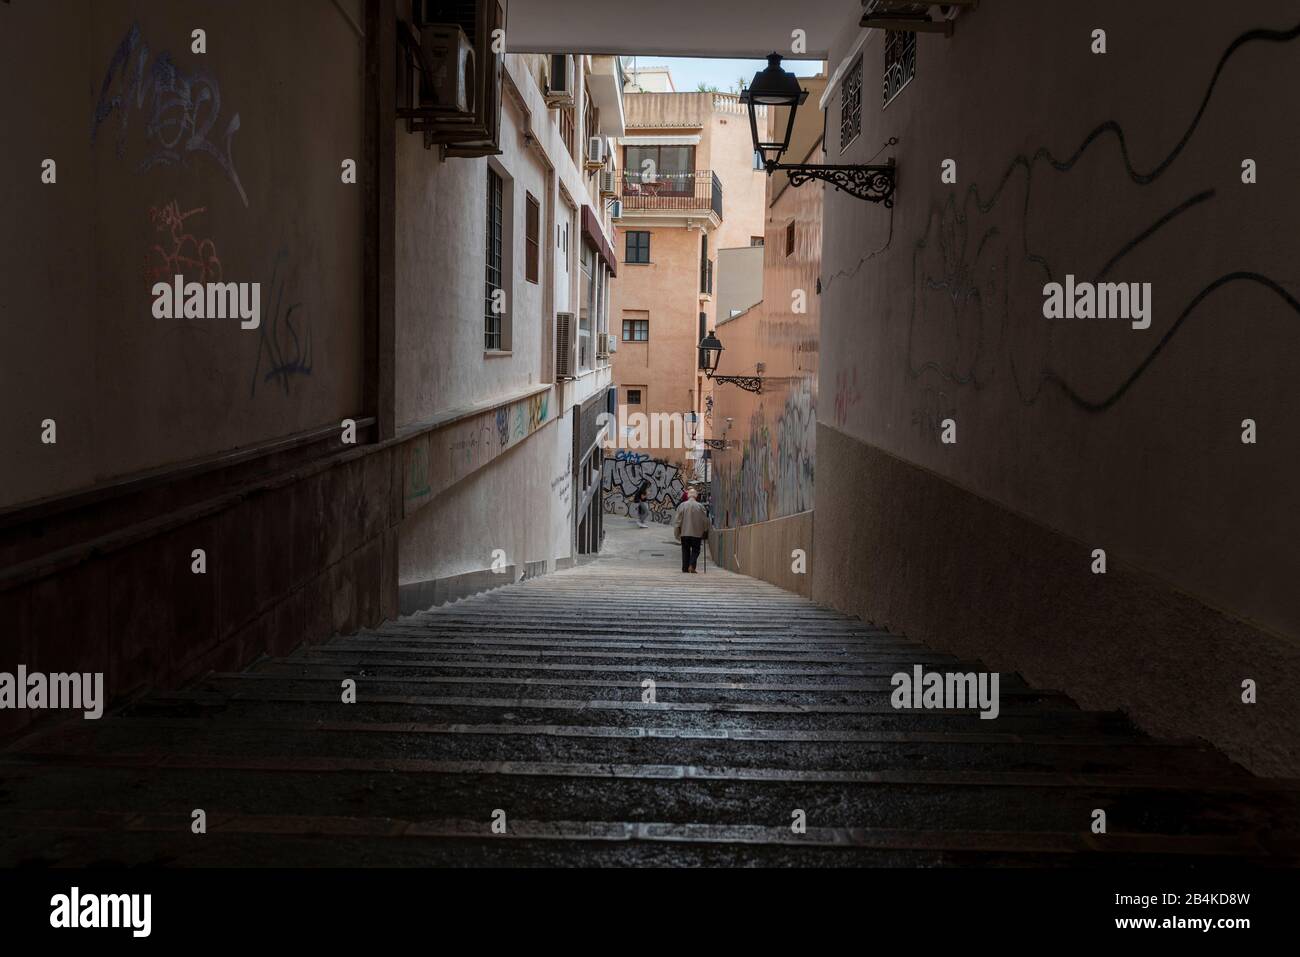 Espagne, Majorque, Palma, un homme avec de la canne est en train de descendre un escalier. Banque D'Images